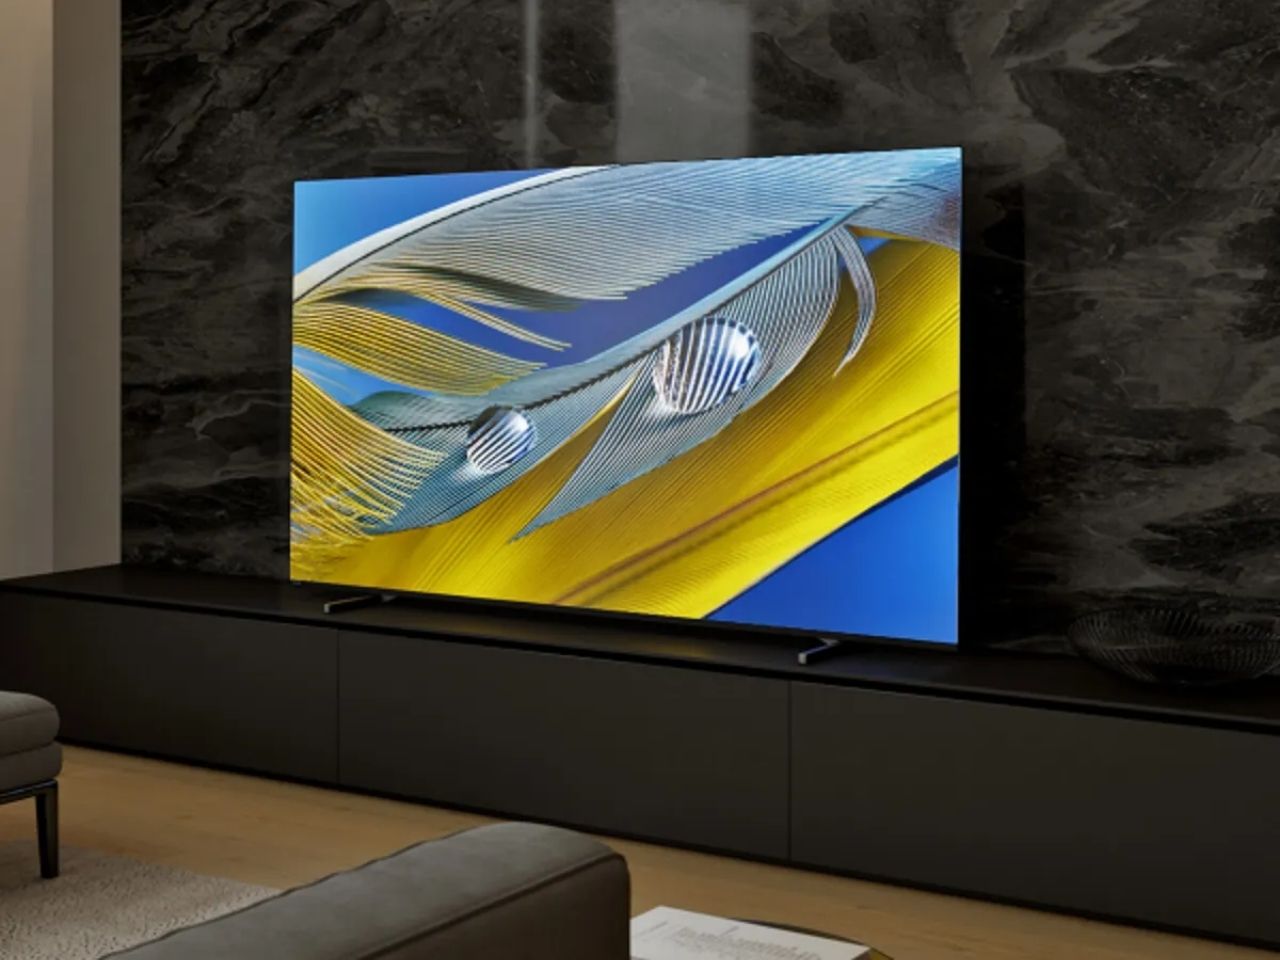 Sony 55-inch Bravia OLED TV in living room.